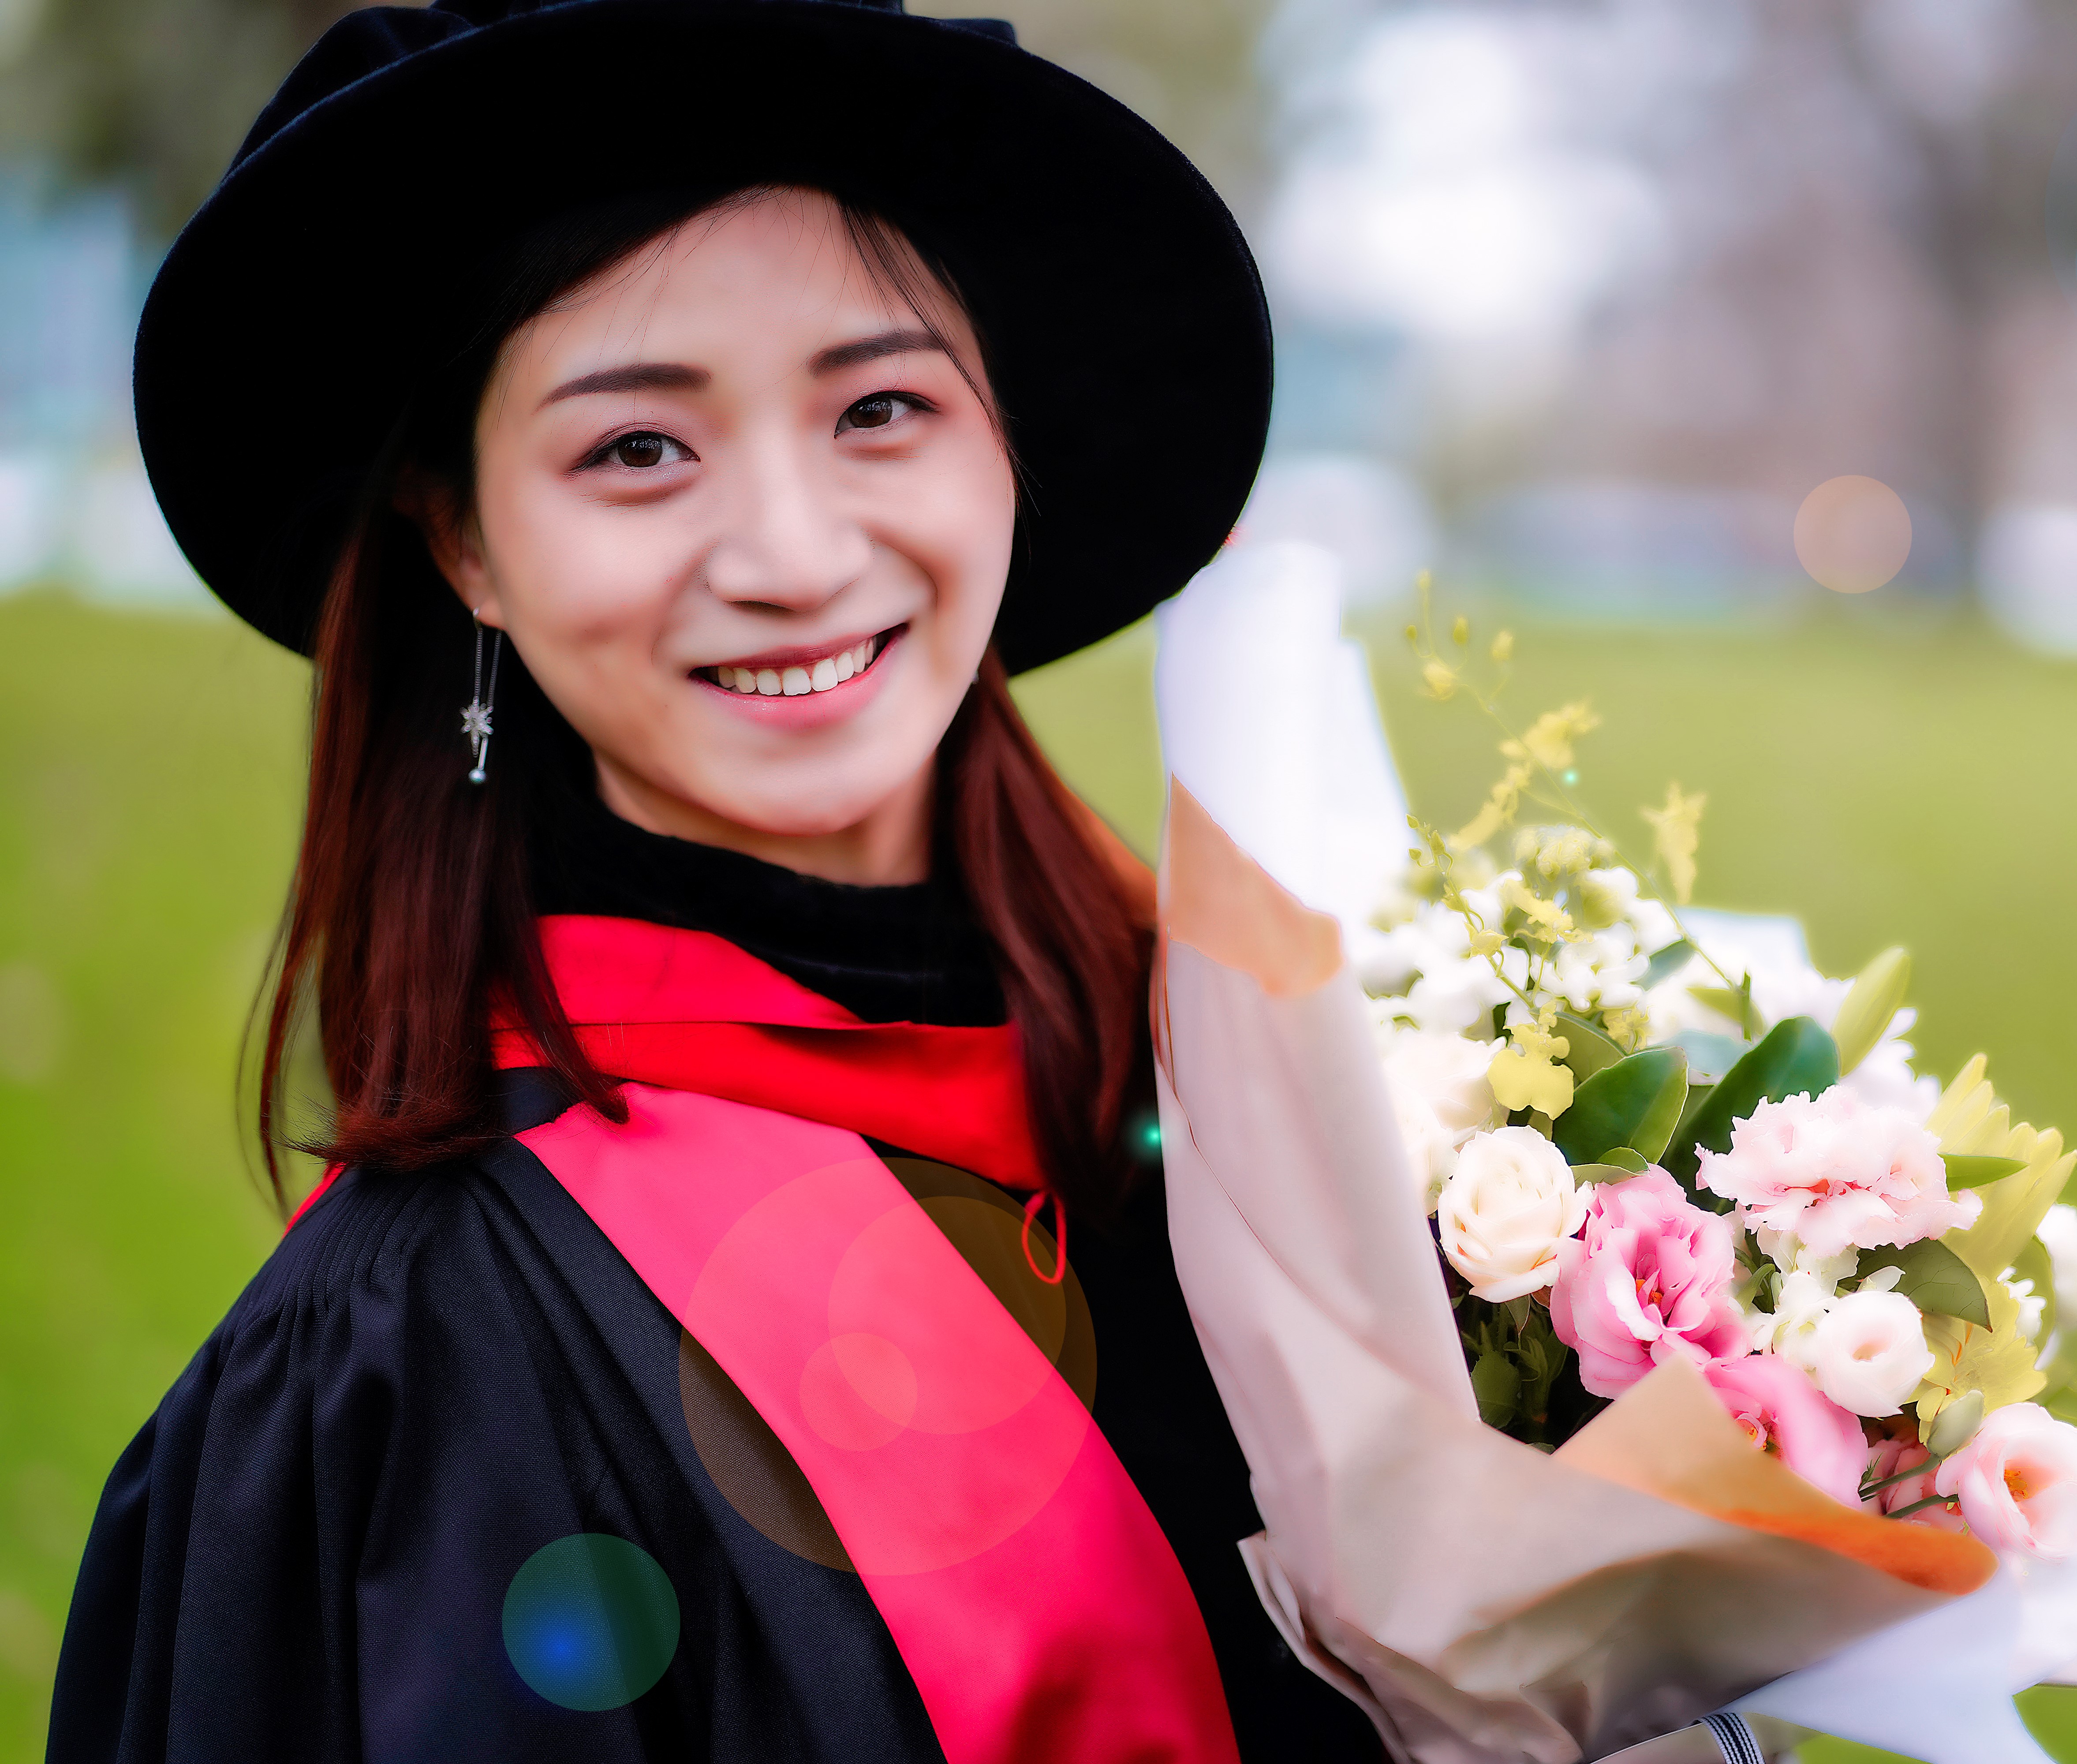 Dr Xia (Emma) Liang in her graduation regalia